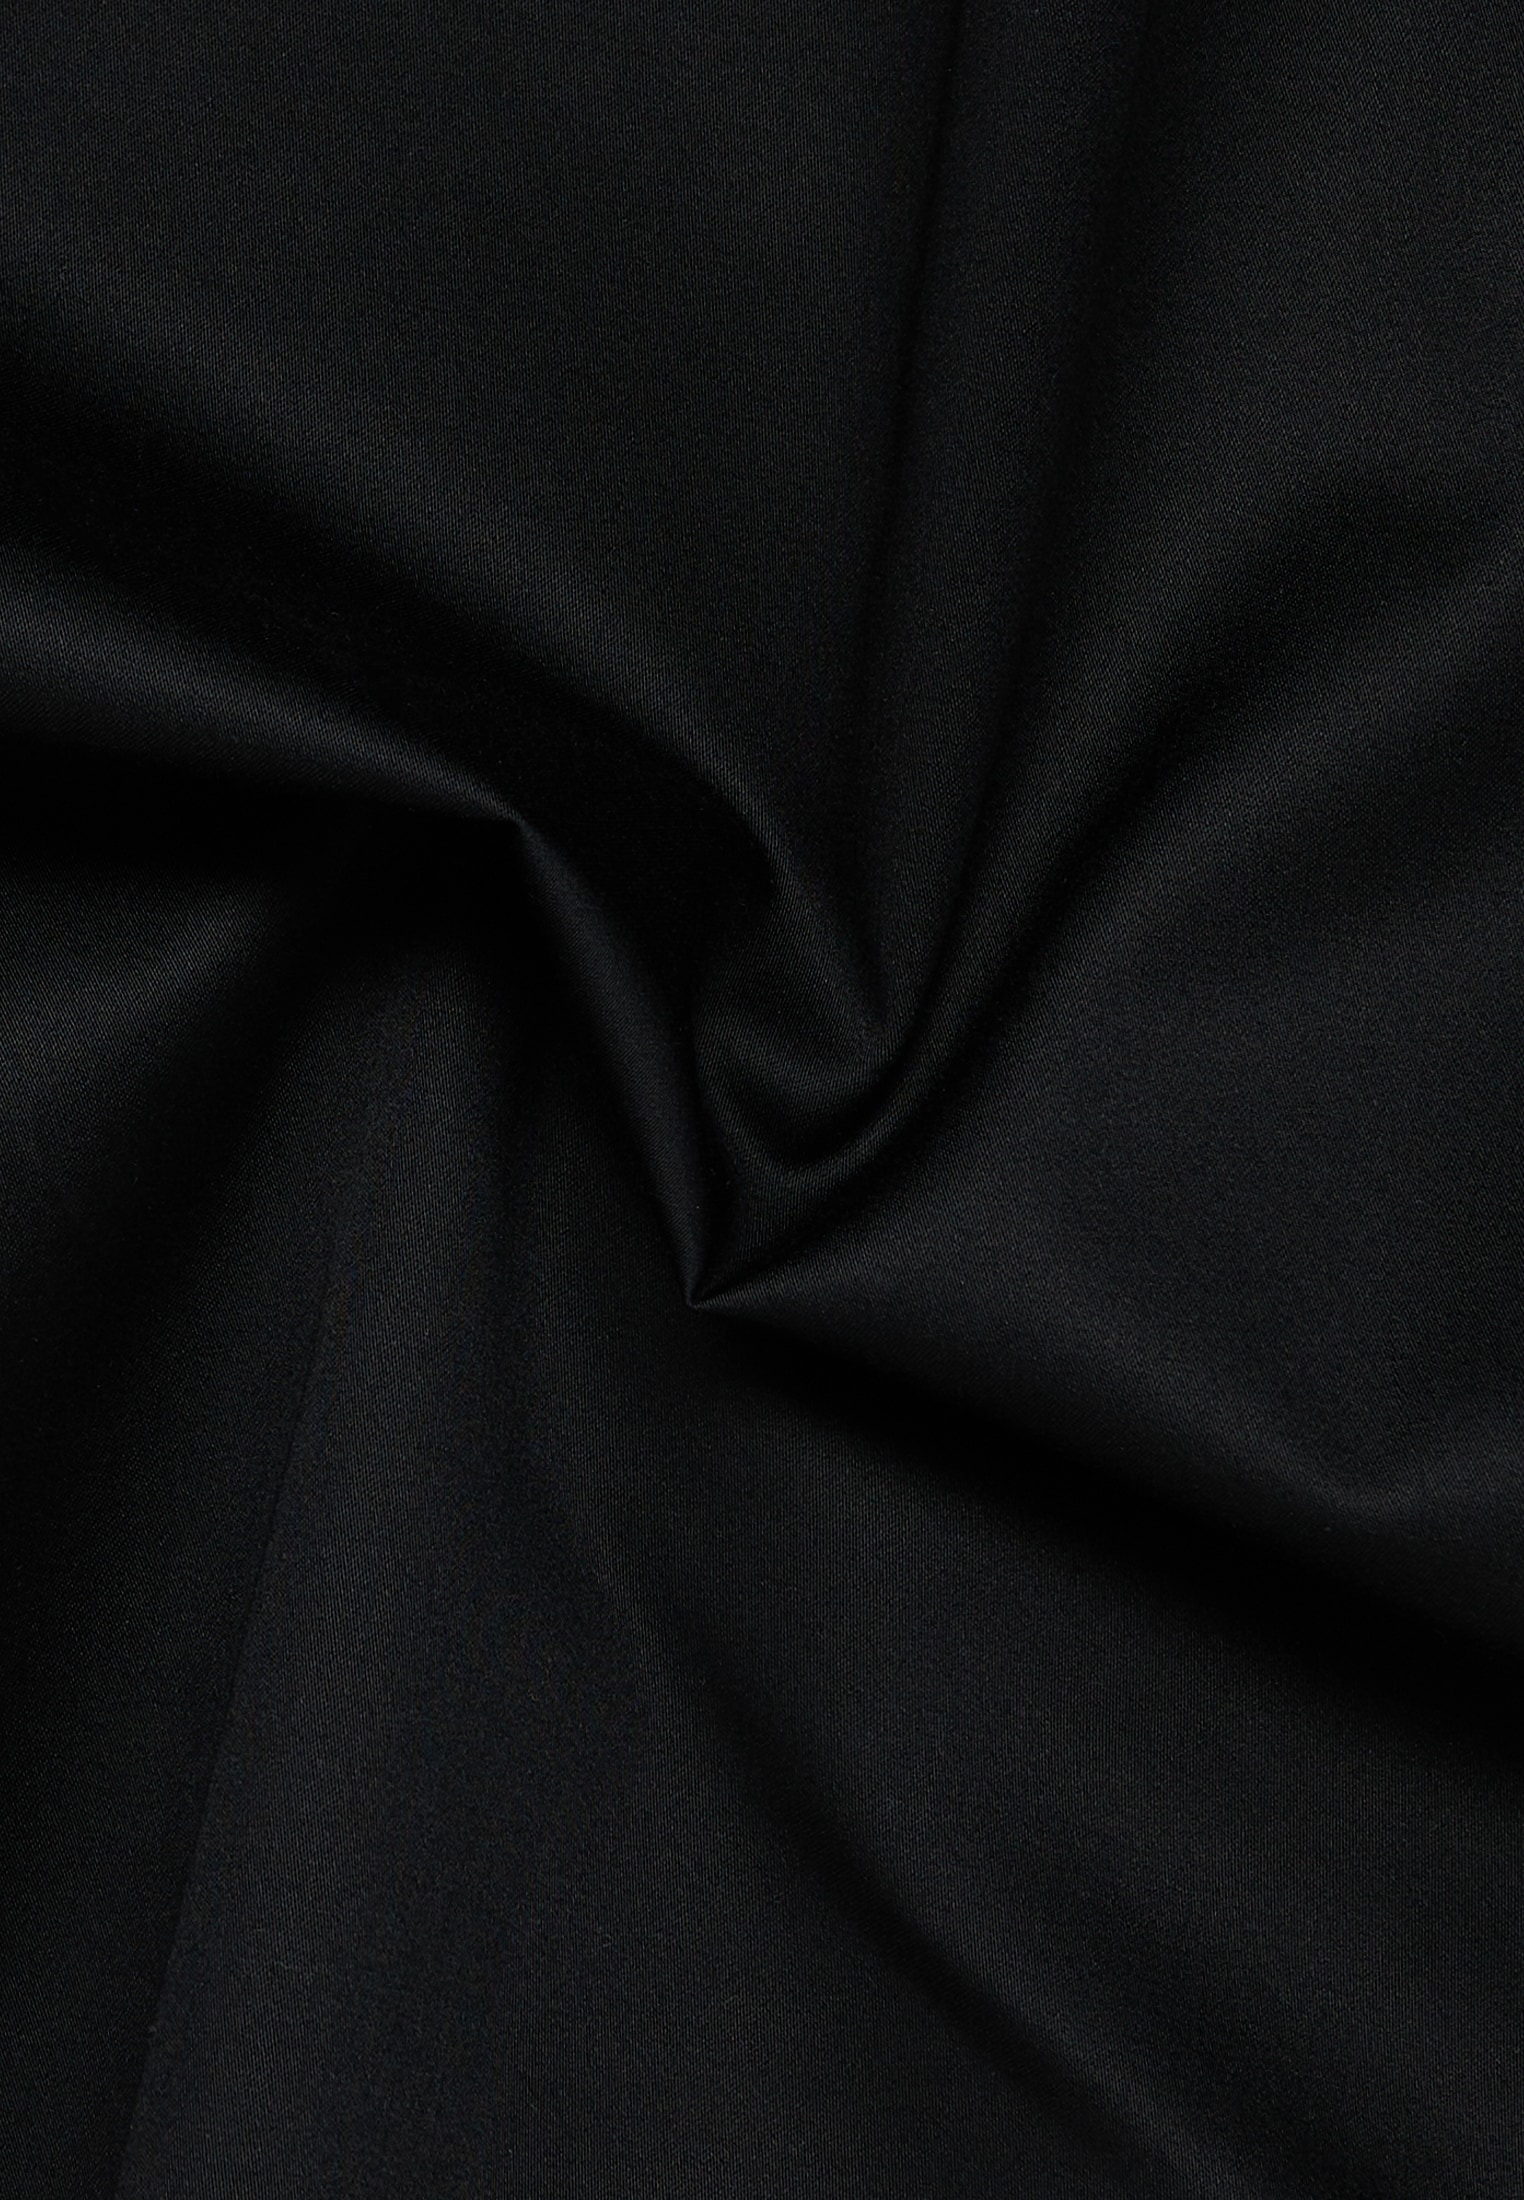 Satin Shirt Bluse in schwarz unifarben